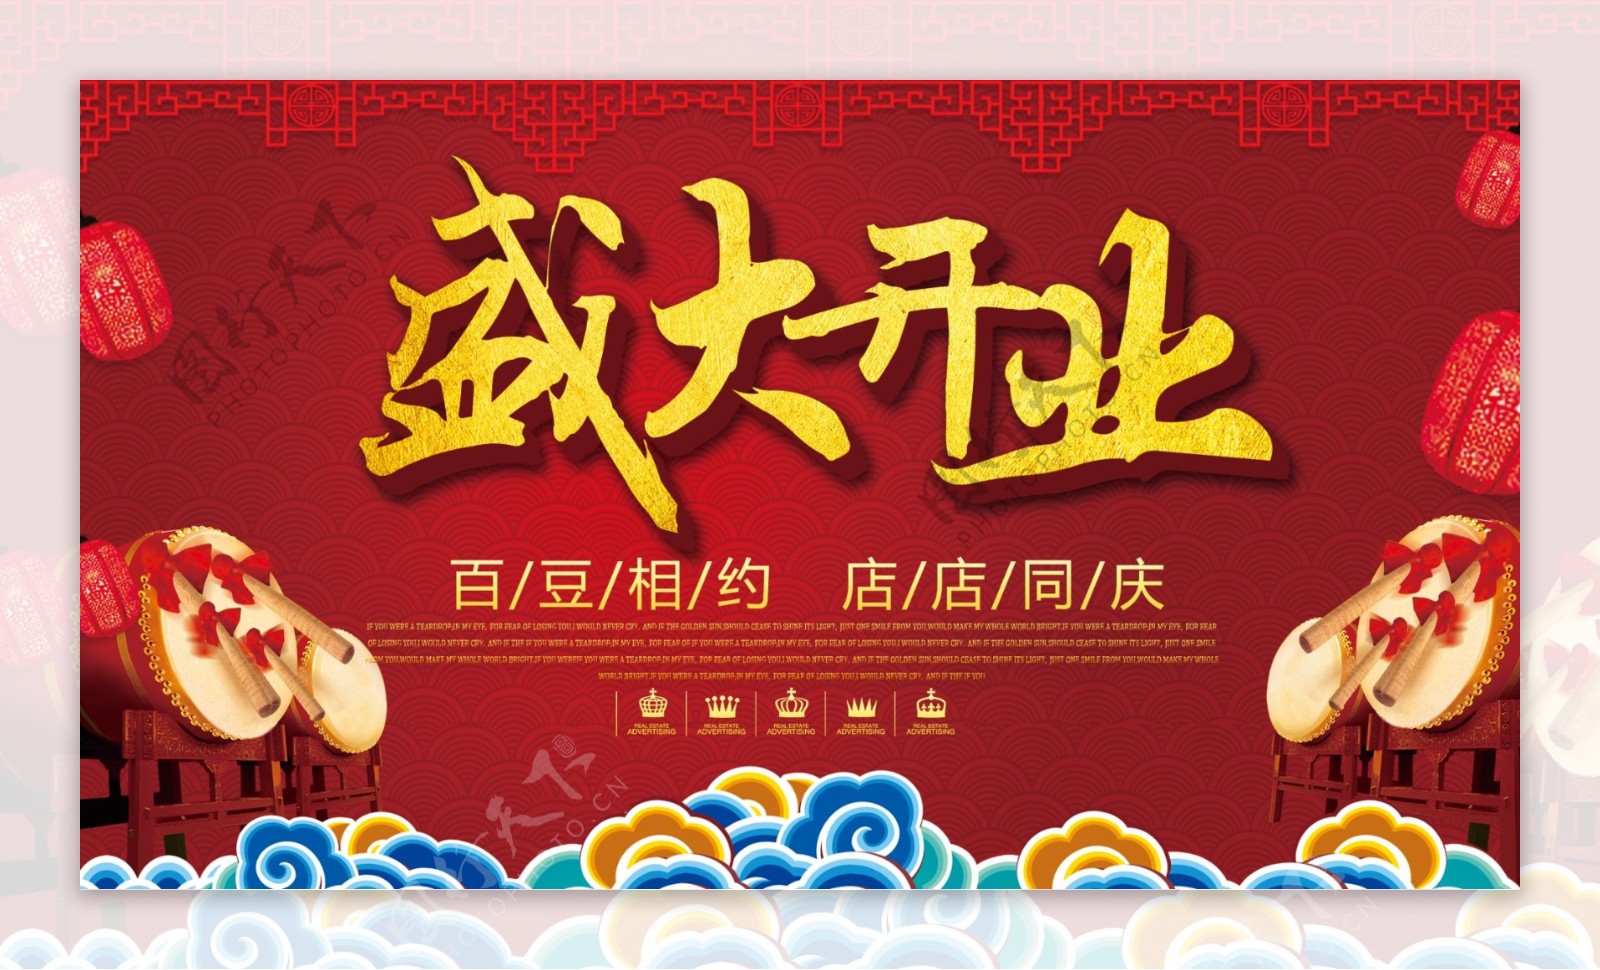 百豆相约豆腐店开业活动宣传海报